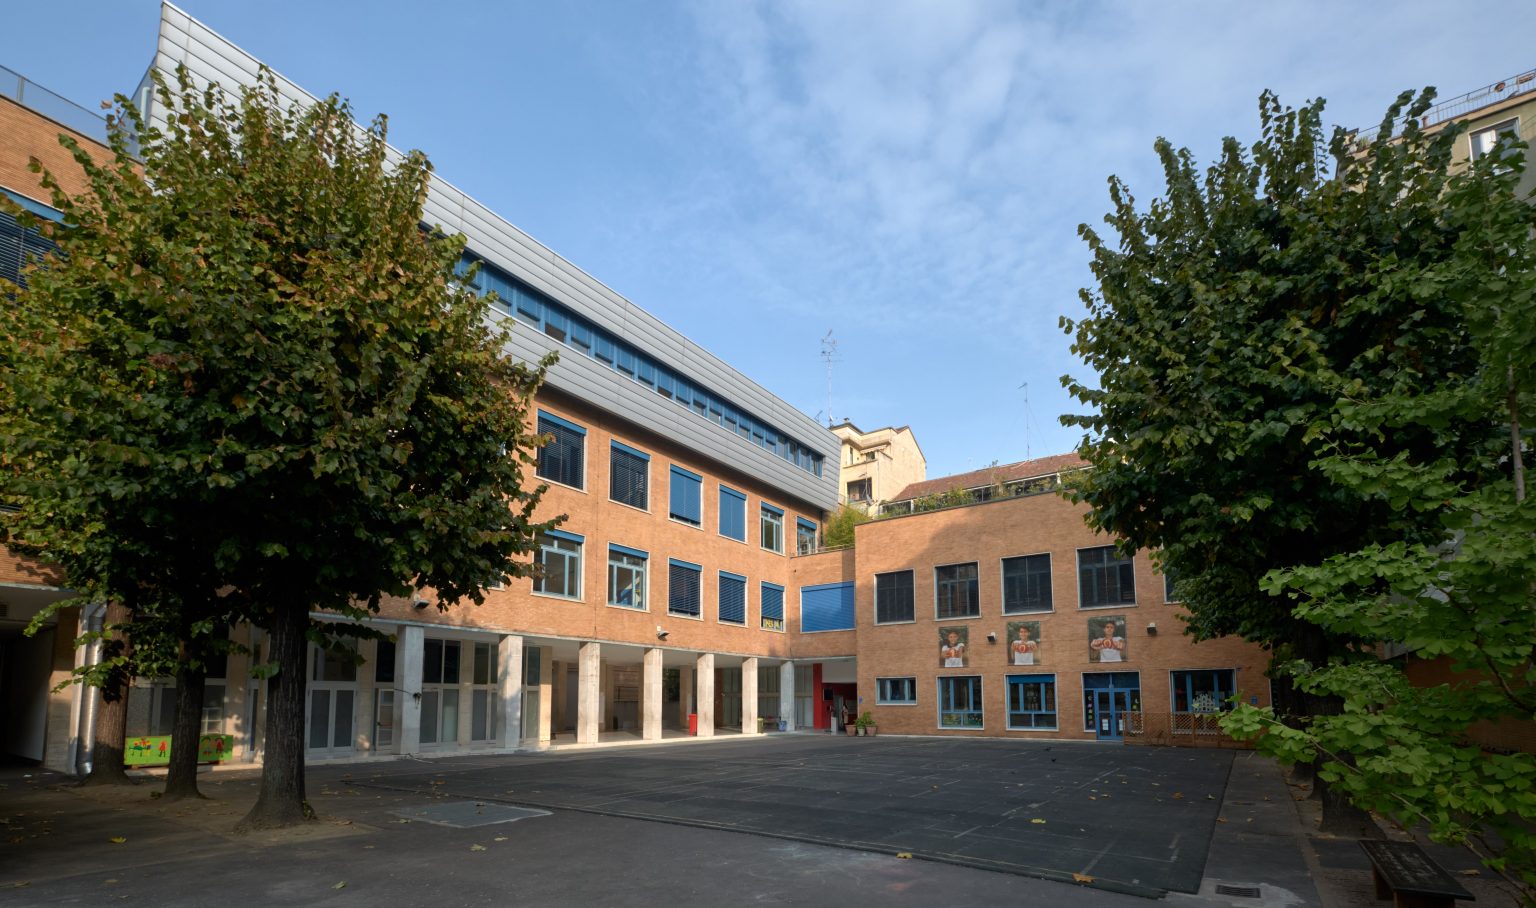 La scuola svizzera di Milano vista dall'interno.